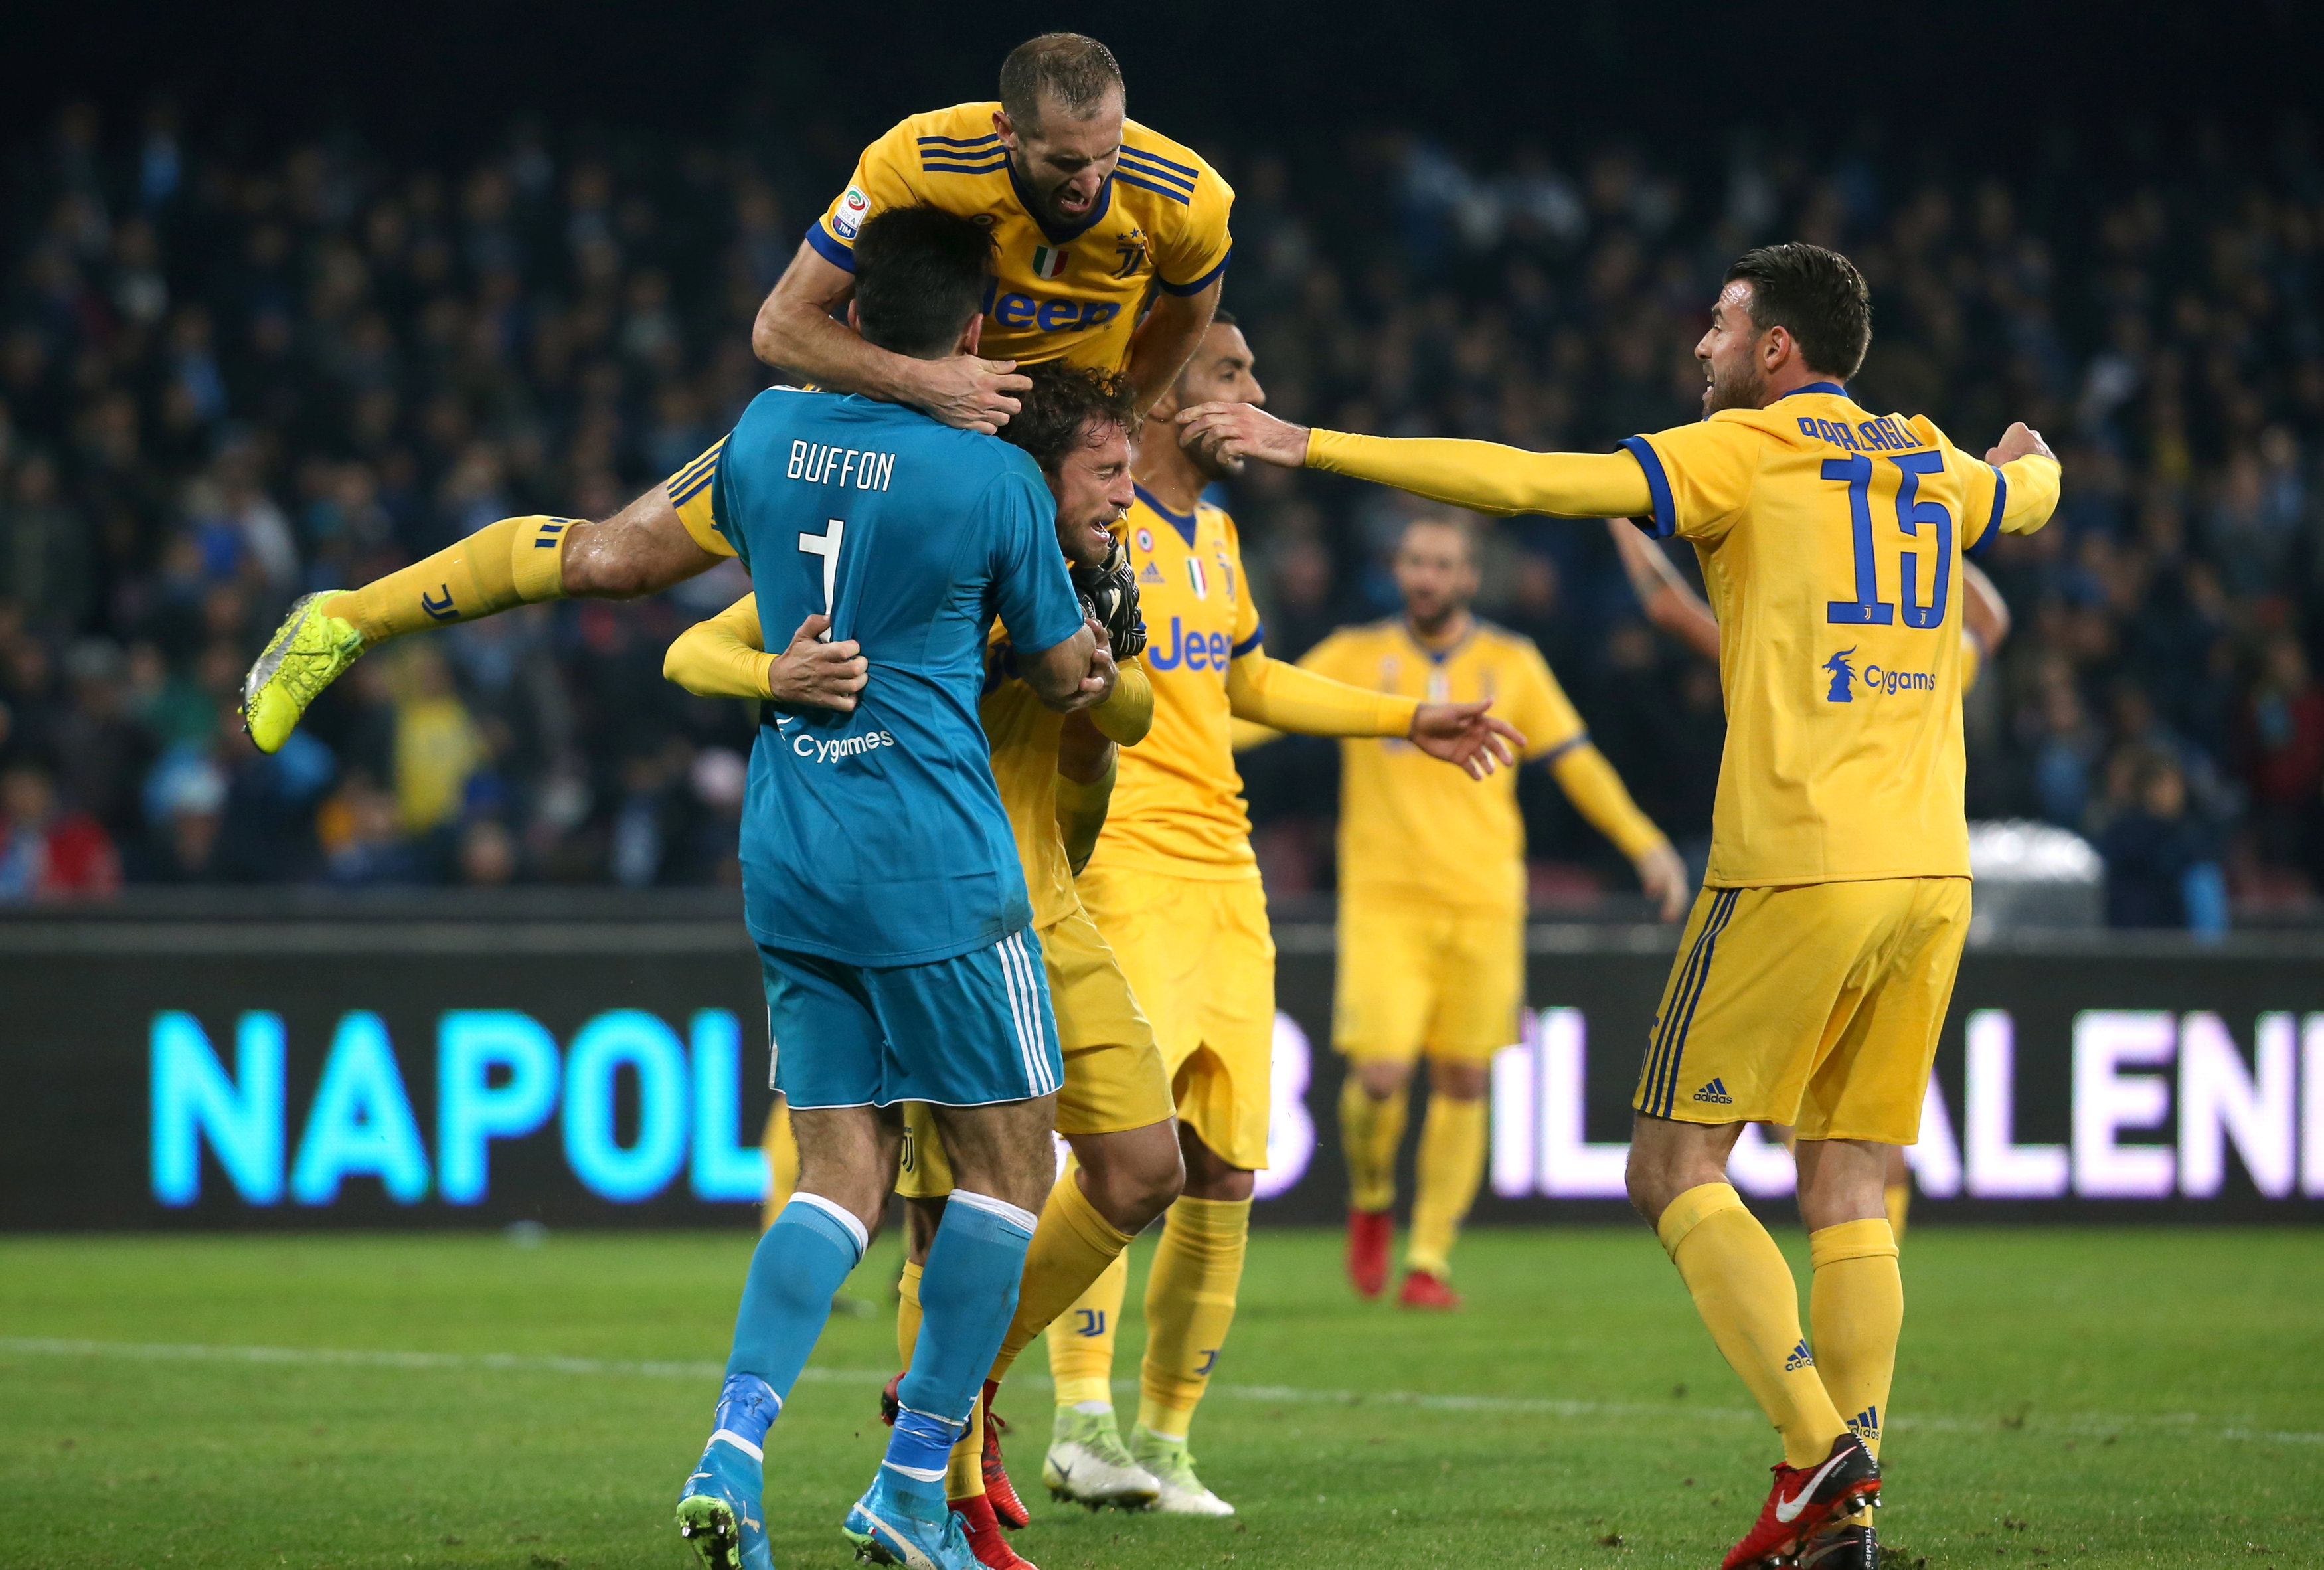 Niềm vui của các cầu thủ Juventus sau khi trọng tài thổi còi kết thúc trận đấu. Ảnh: REUTERS